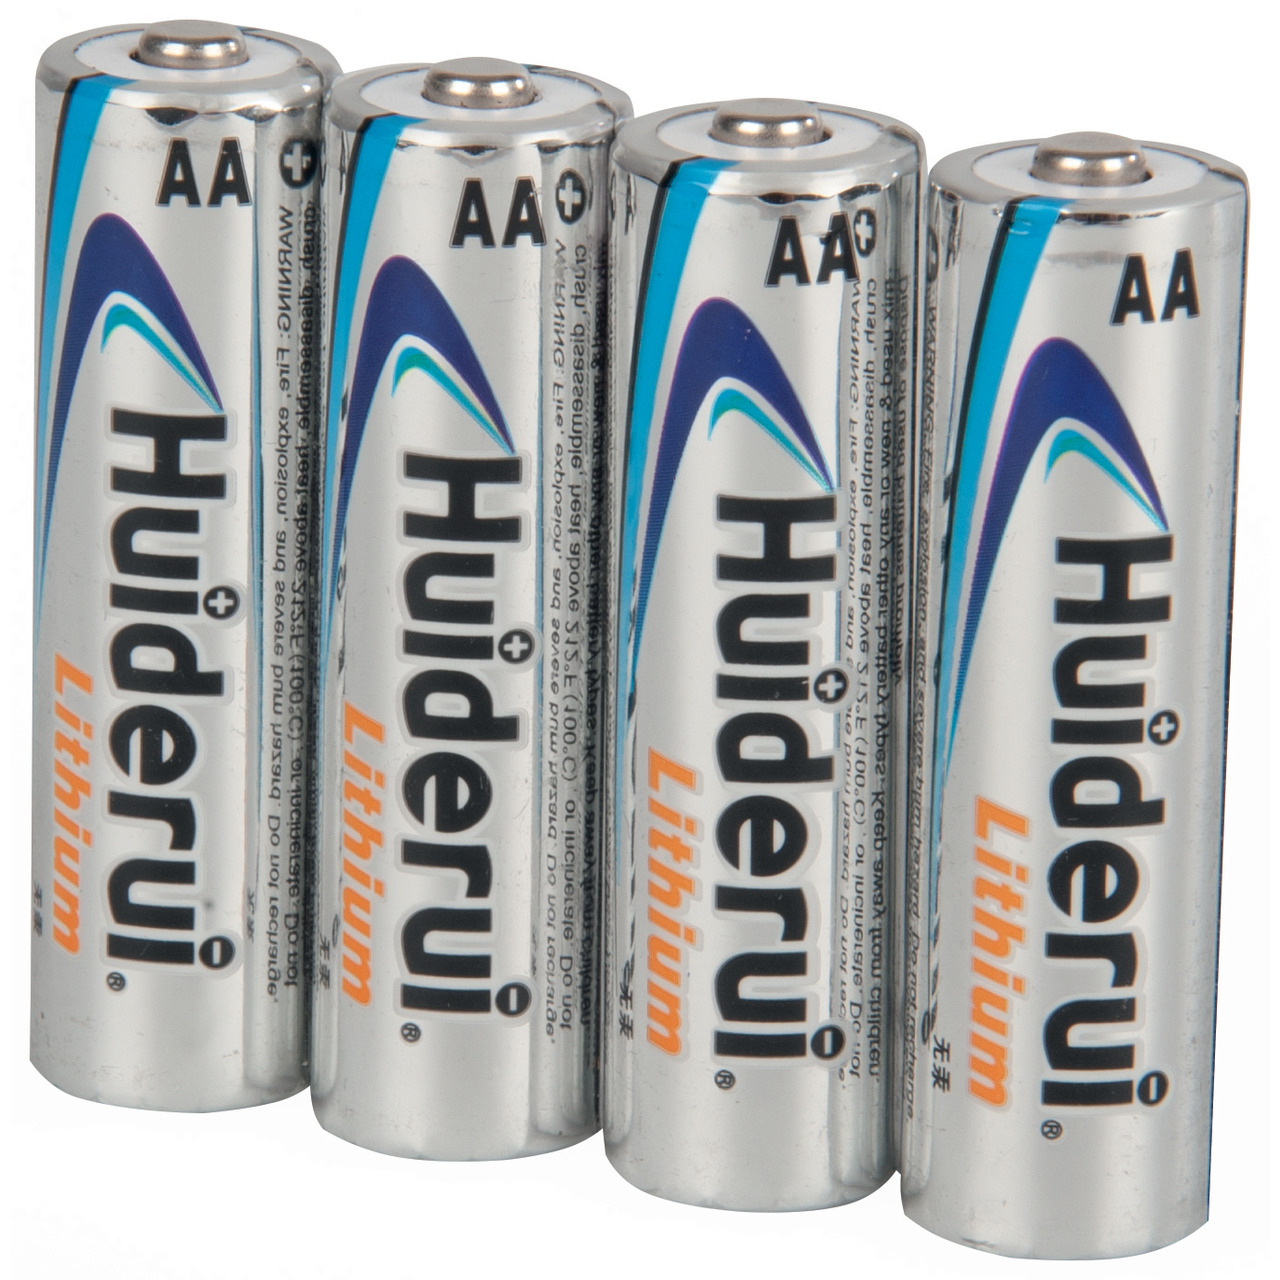 Huiderui Lithium Batterie Mignon AA- 4er Pack